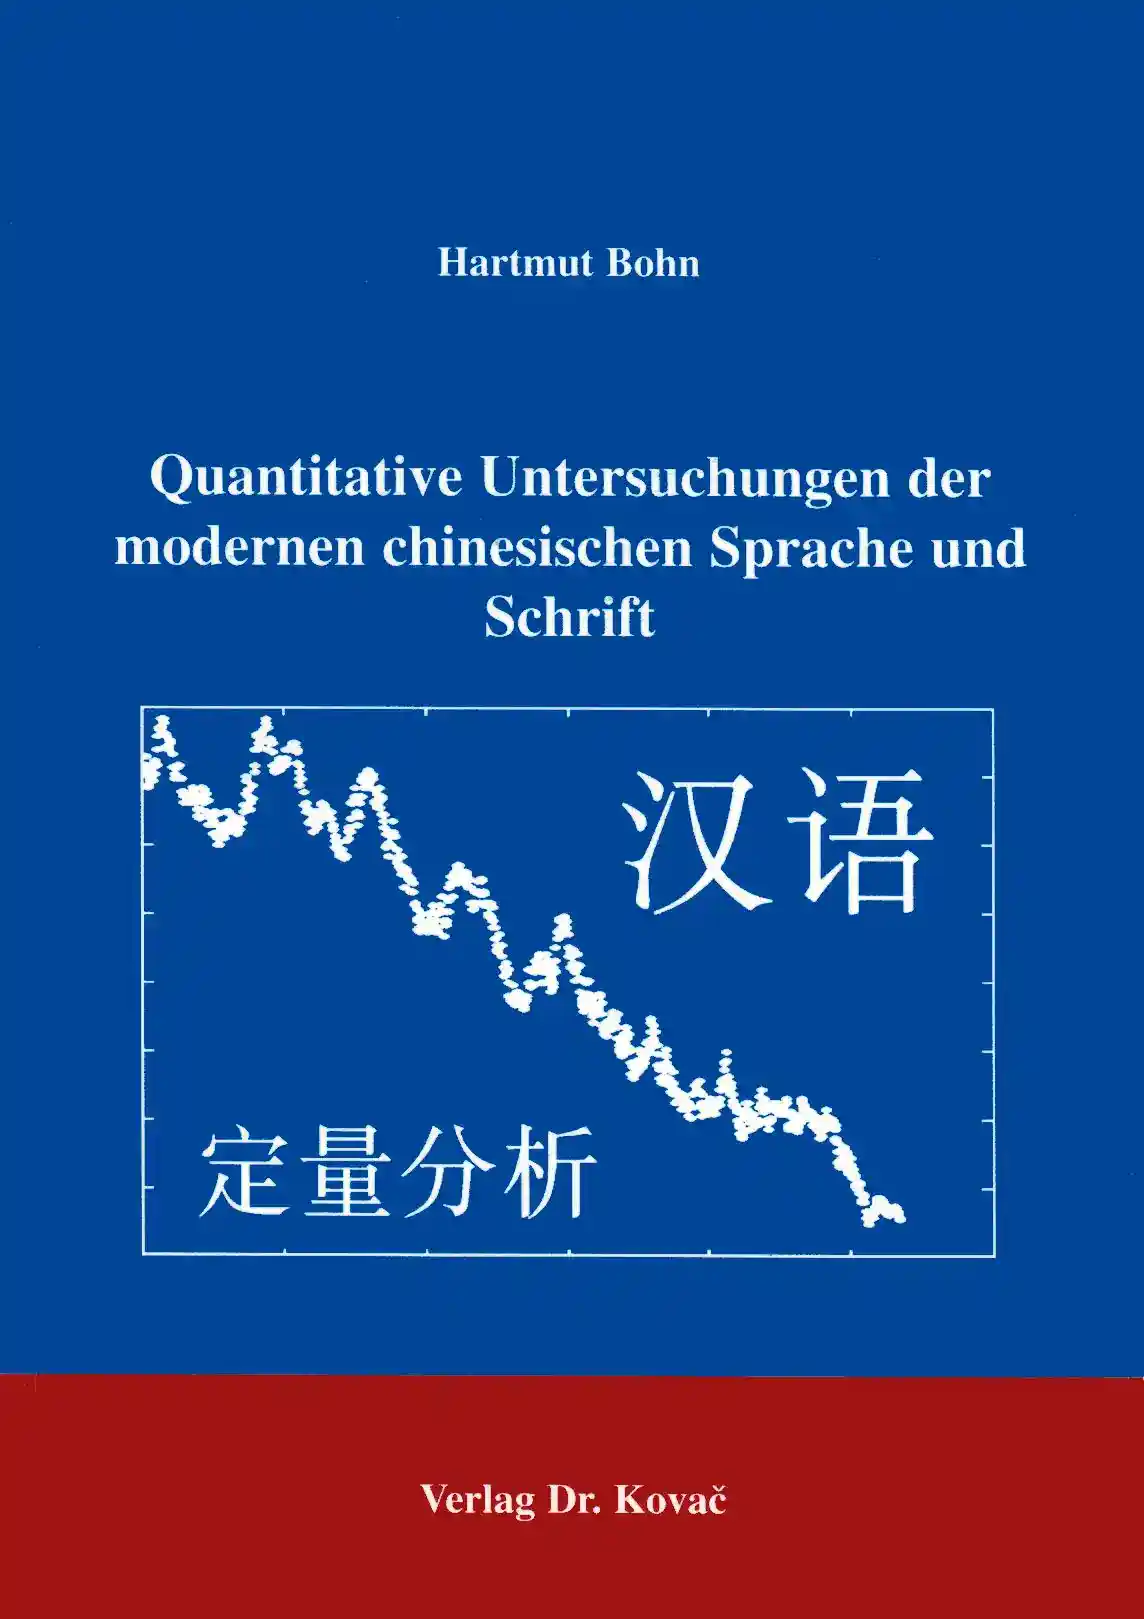 Quantitave Untersuchungen der modernen chinesischen Sprache und Schrift (Forschungsarbeit)